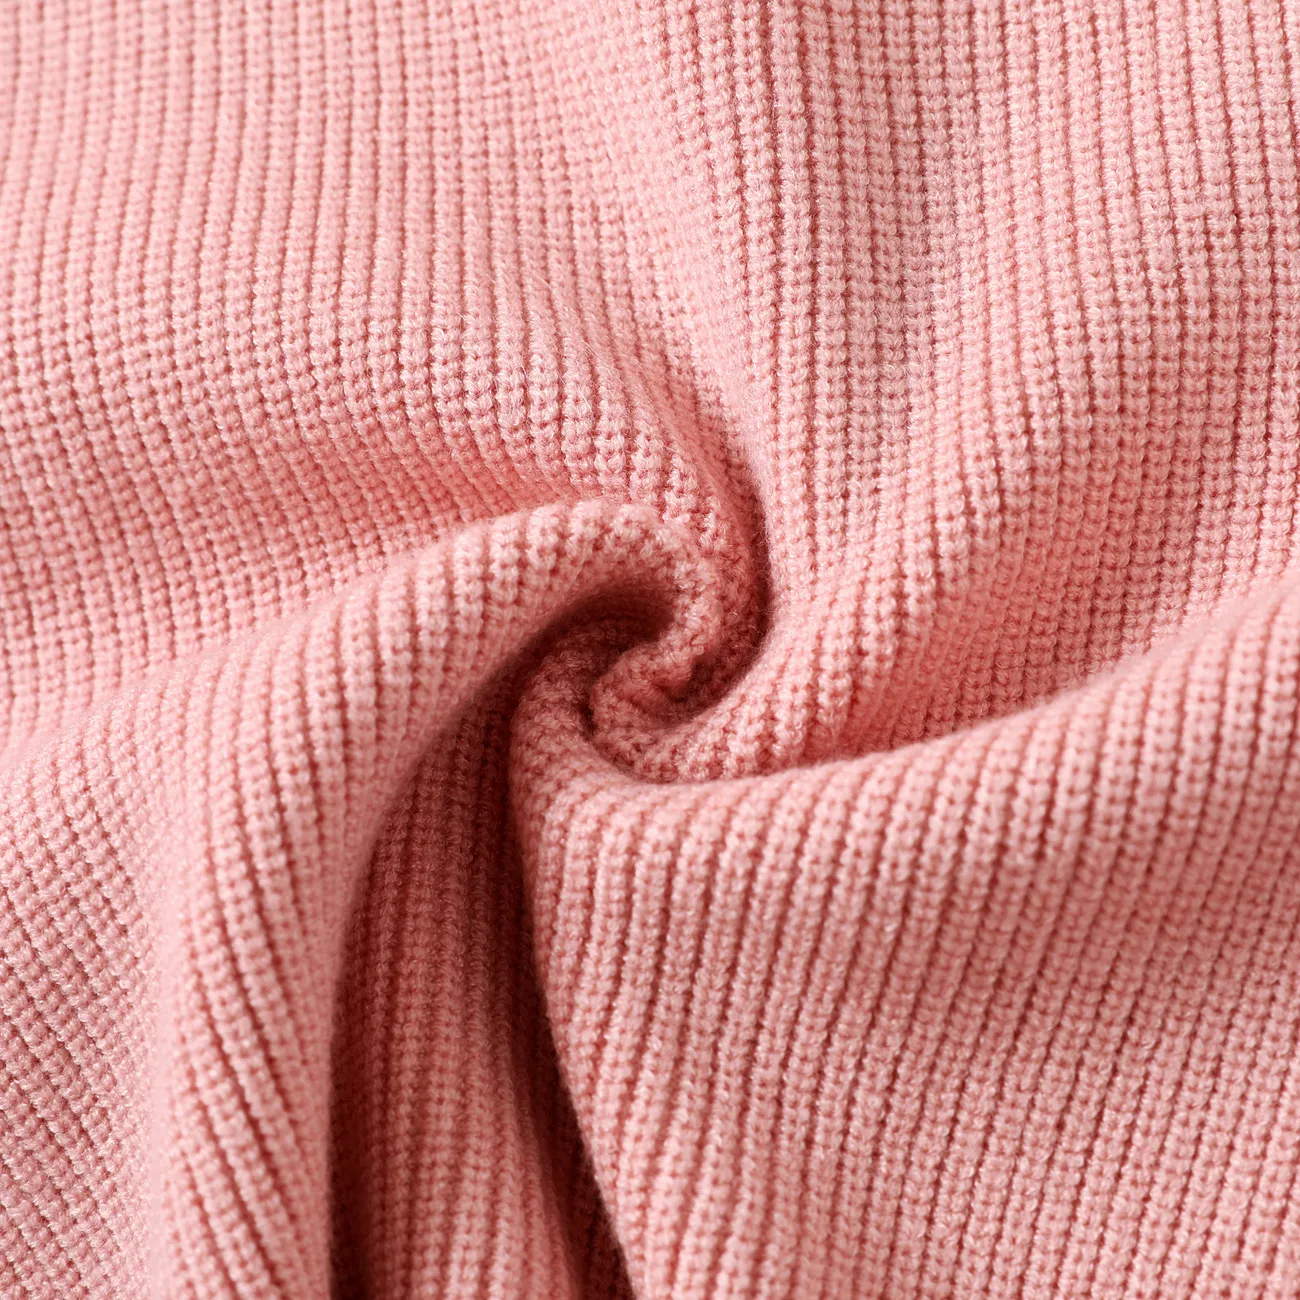 Toddler/Kid Girl/Boy Solid Inserted Shoulder Design Sweater  Pink big image 1